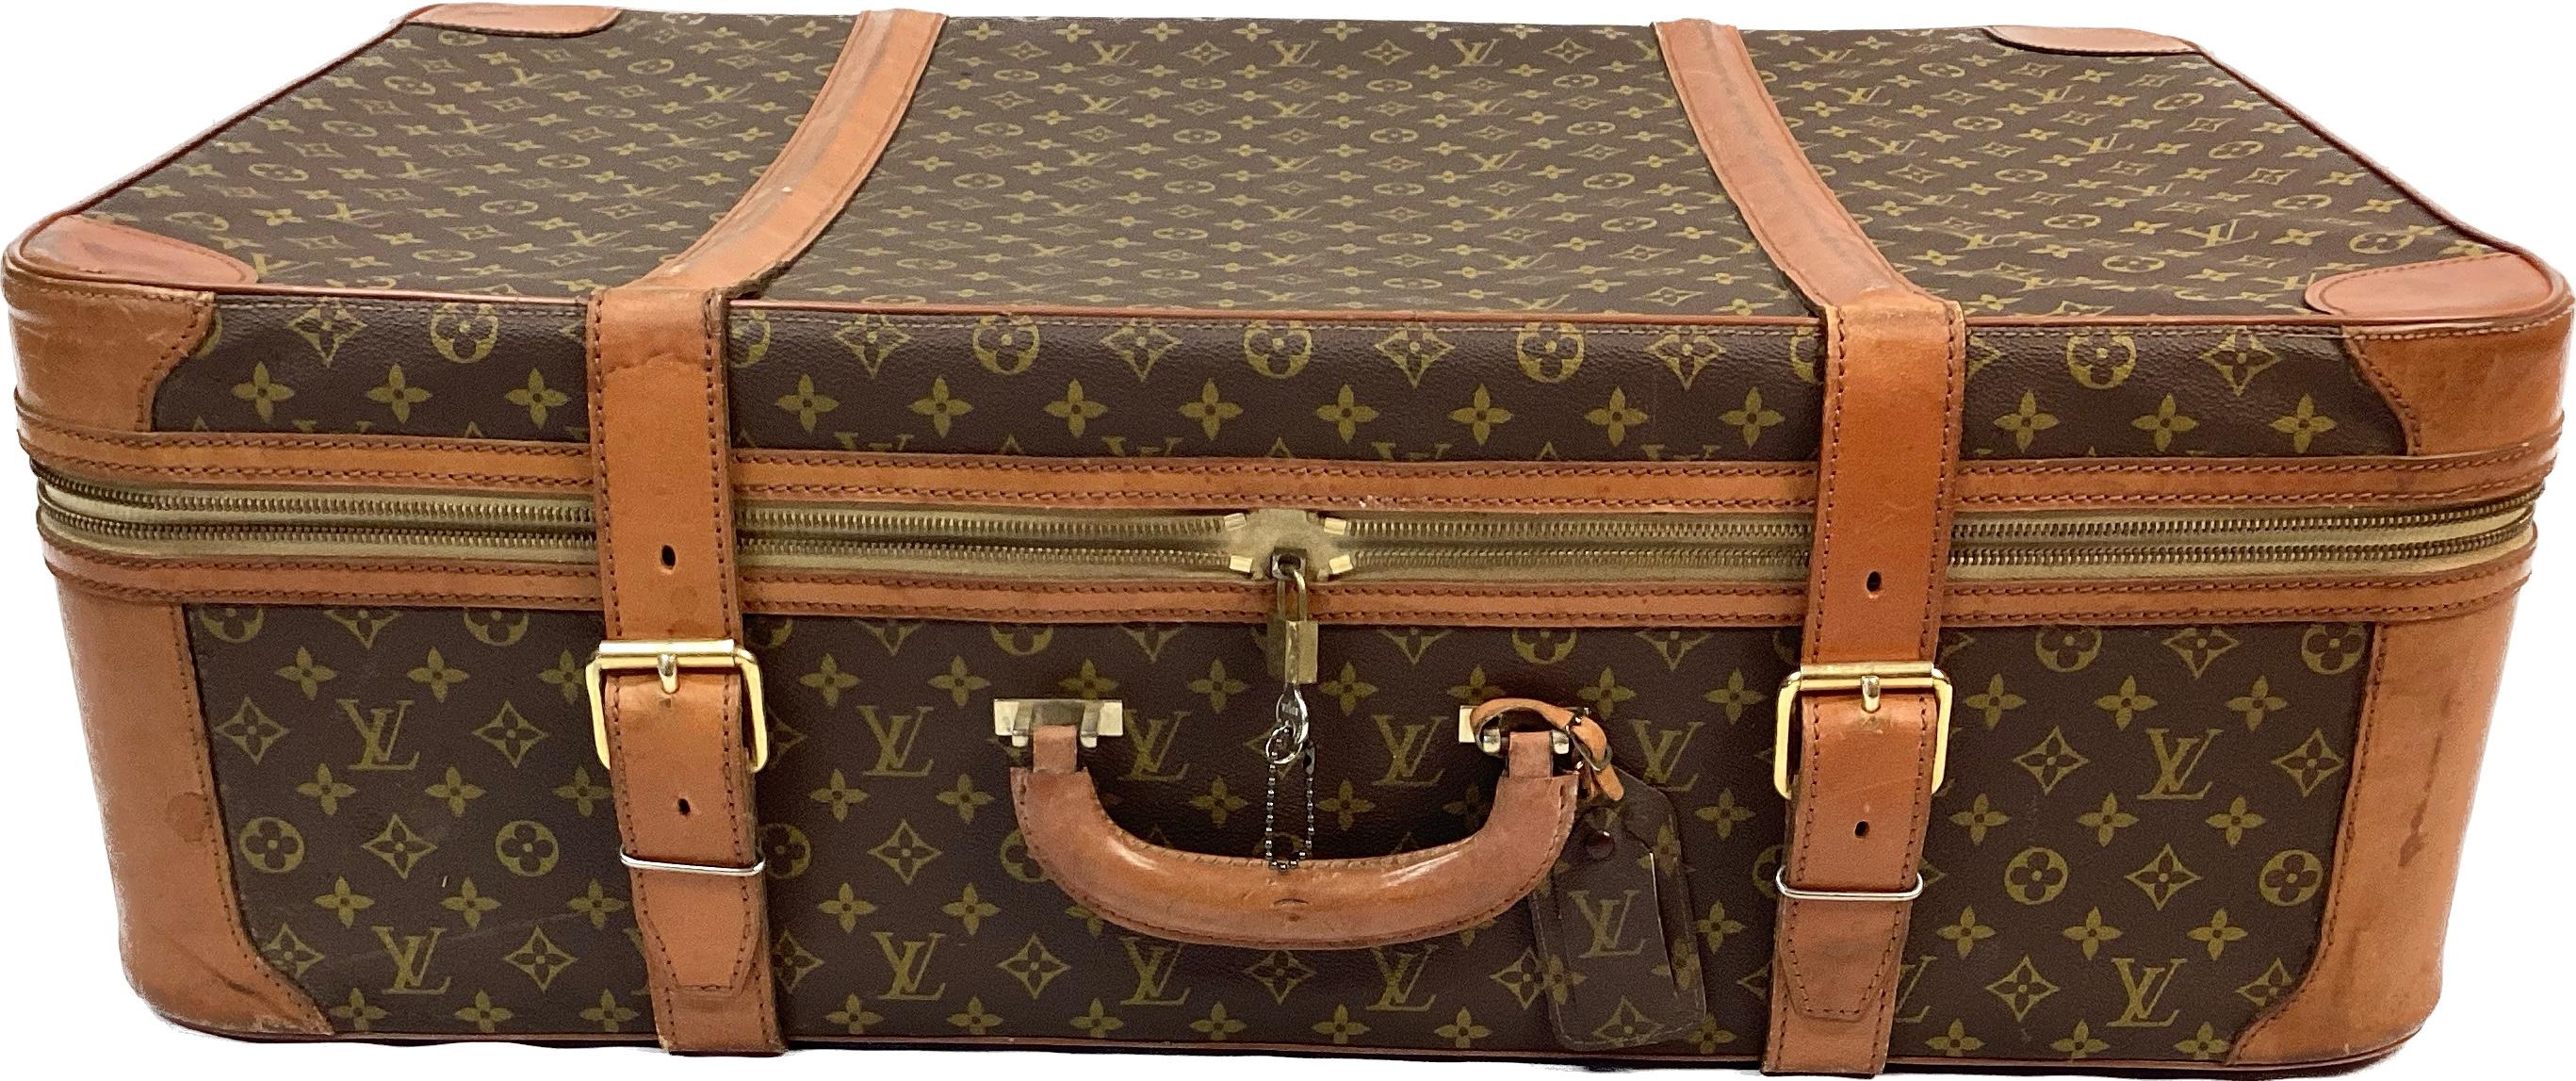 cream vintage suitcase